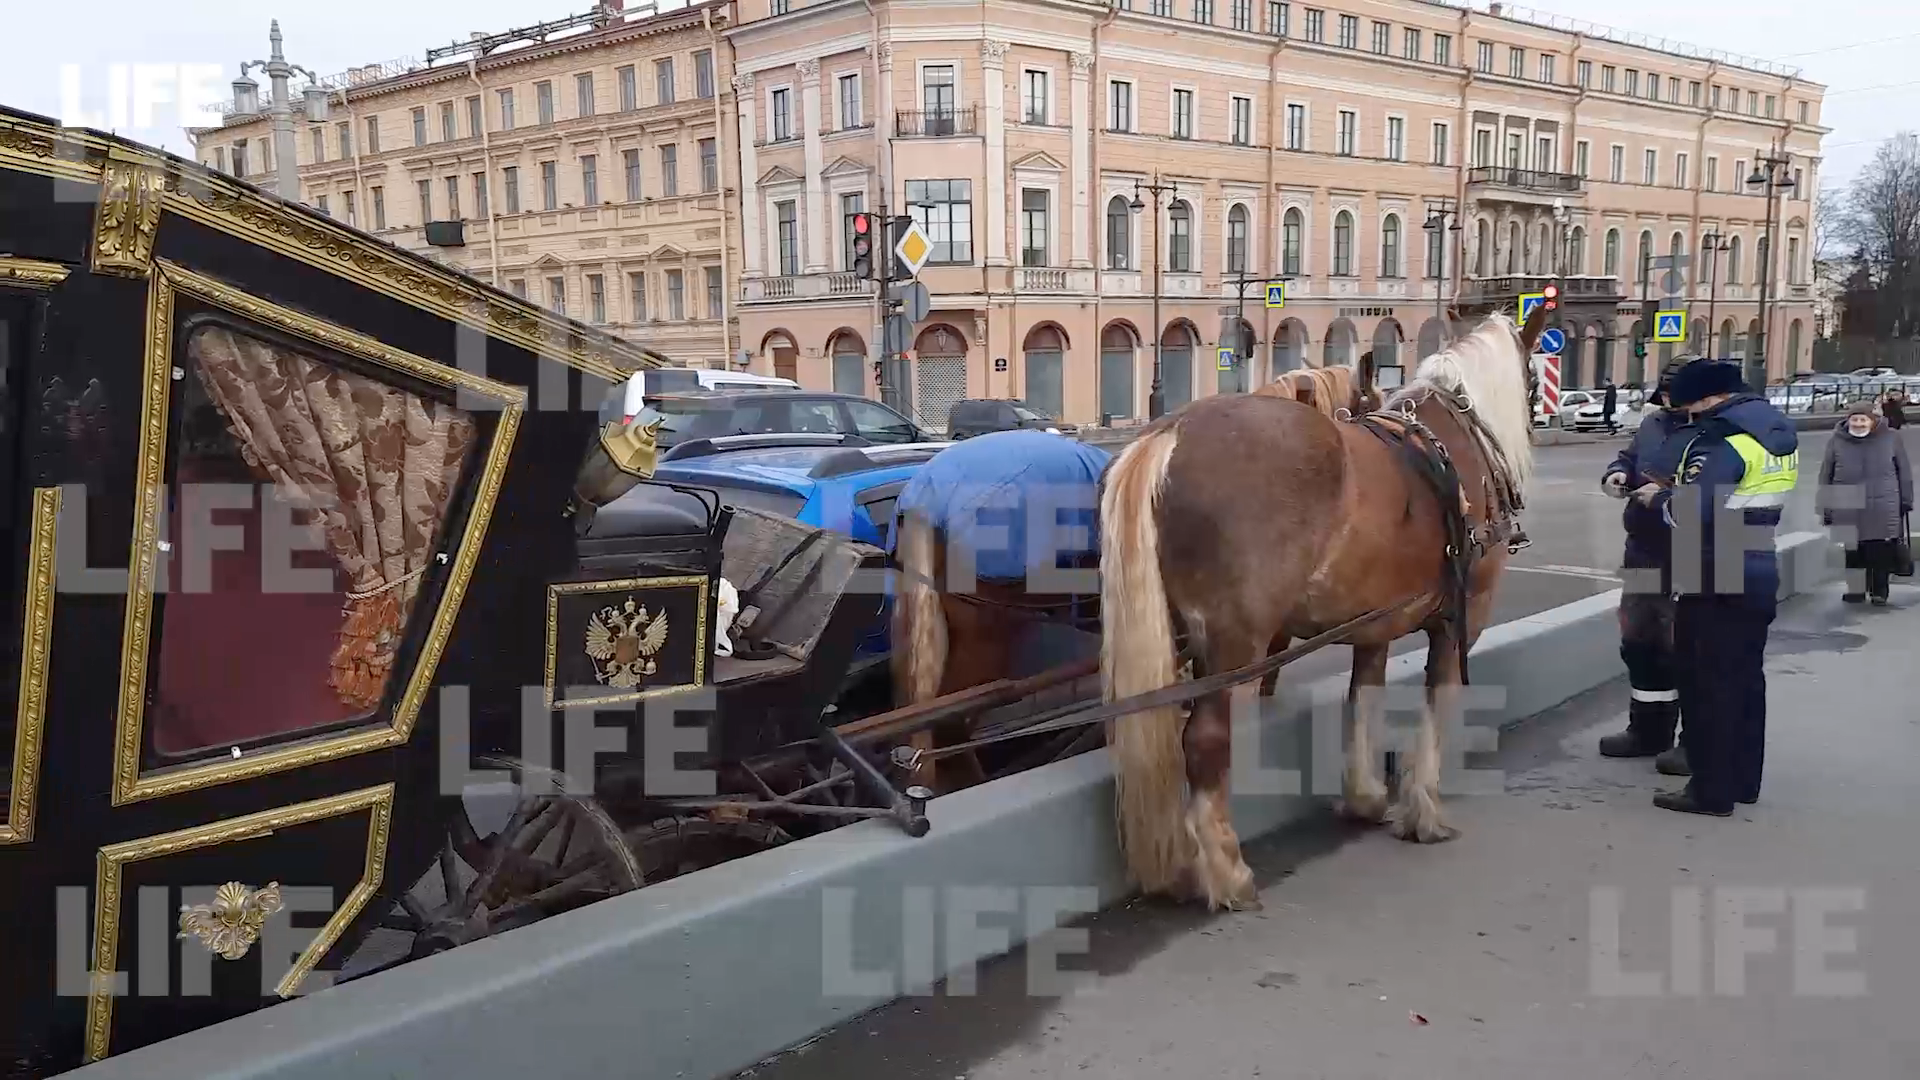 ДТП из XVIII века: Карета столкнулась с авто на Благовещенском мосту в Петербурге